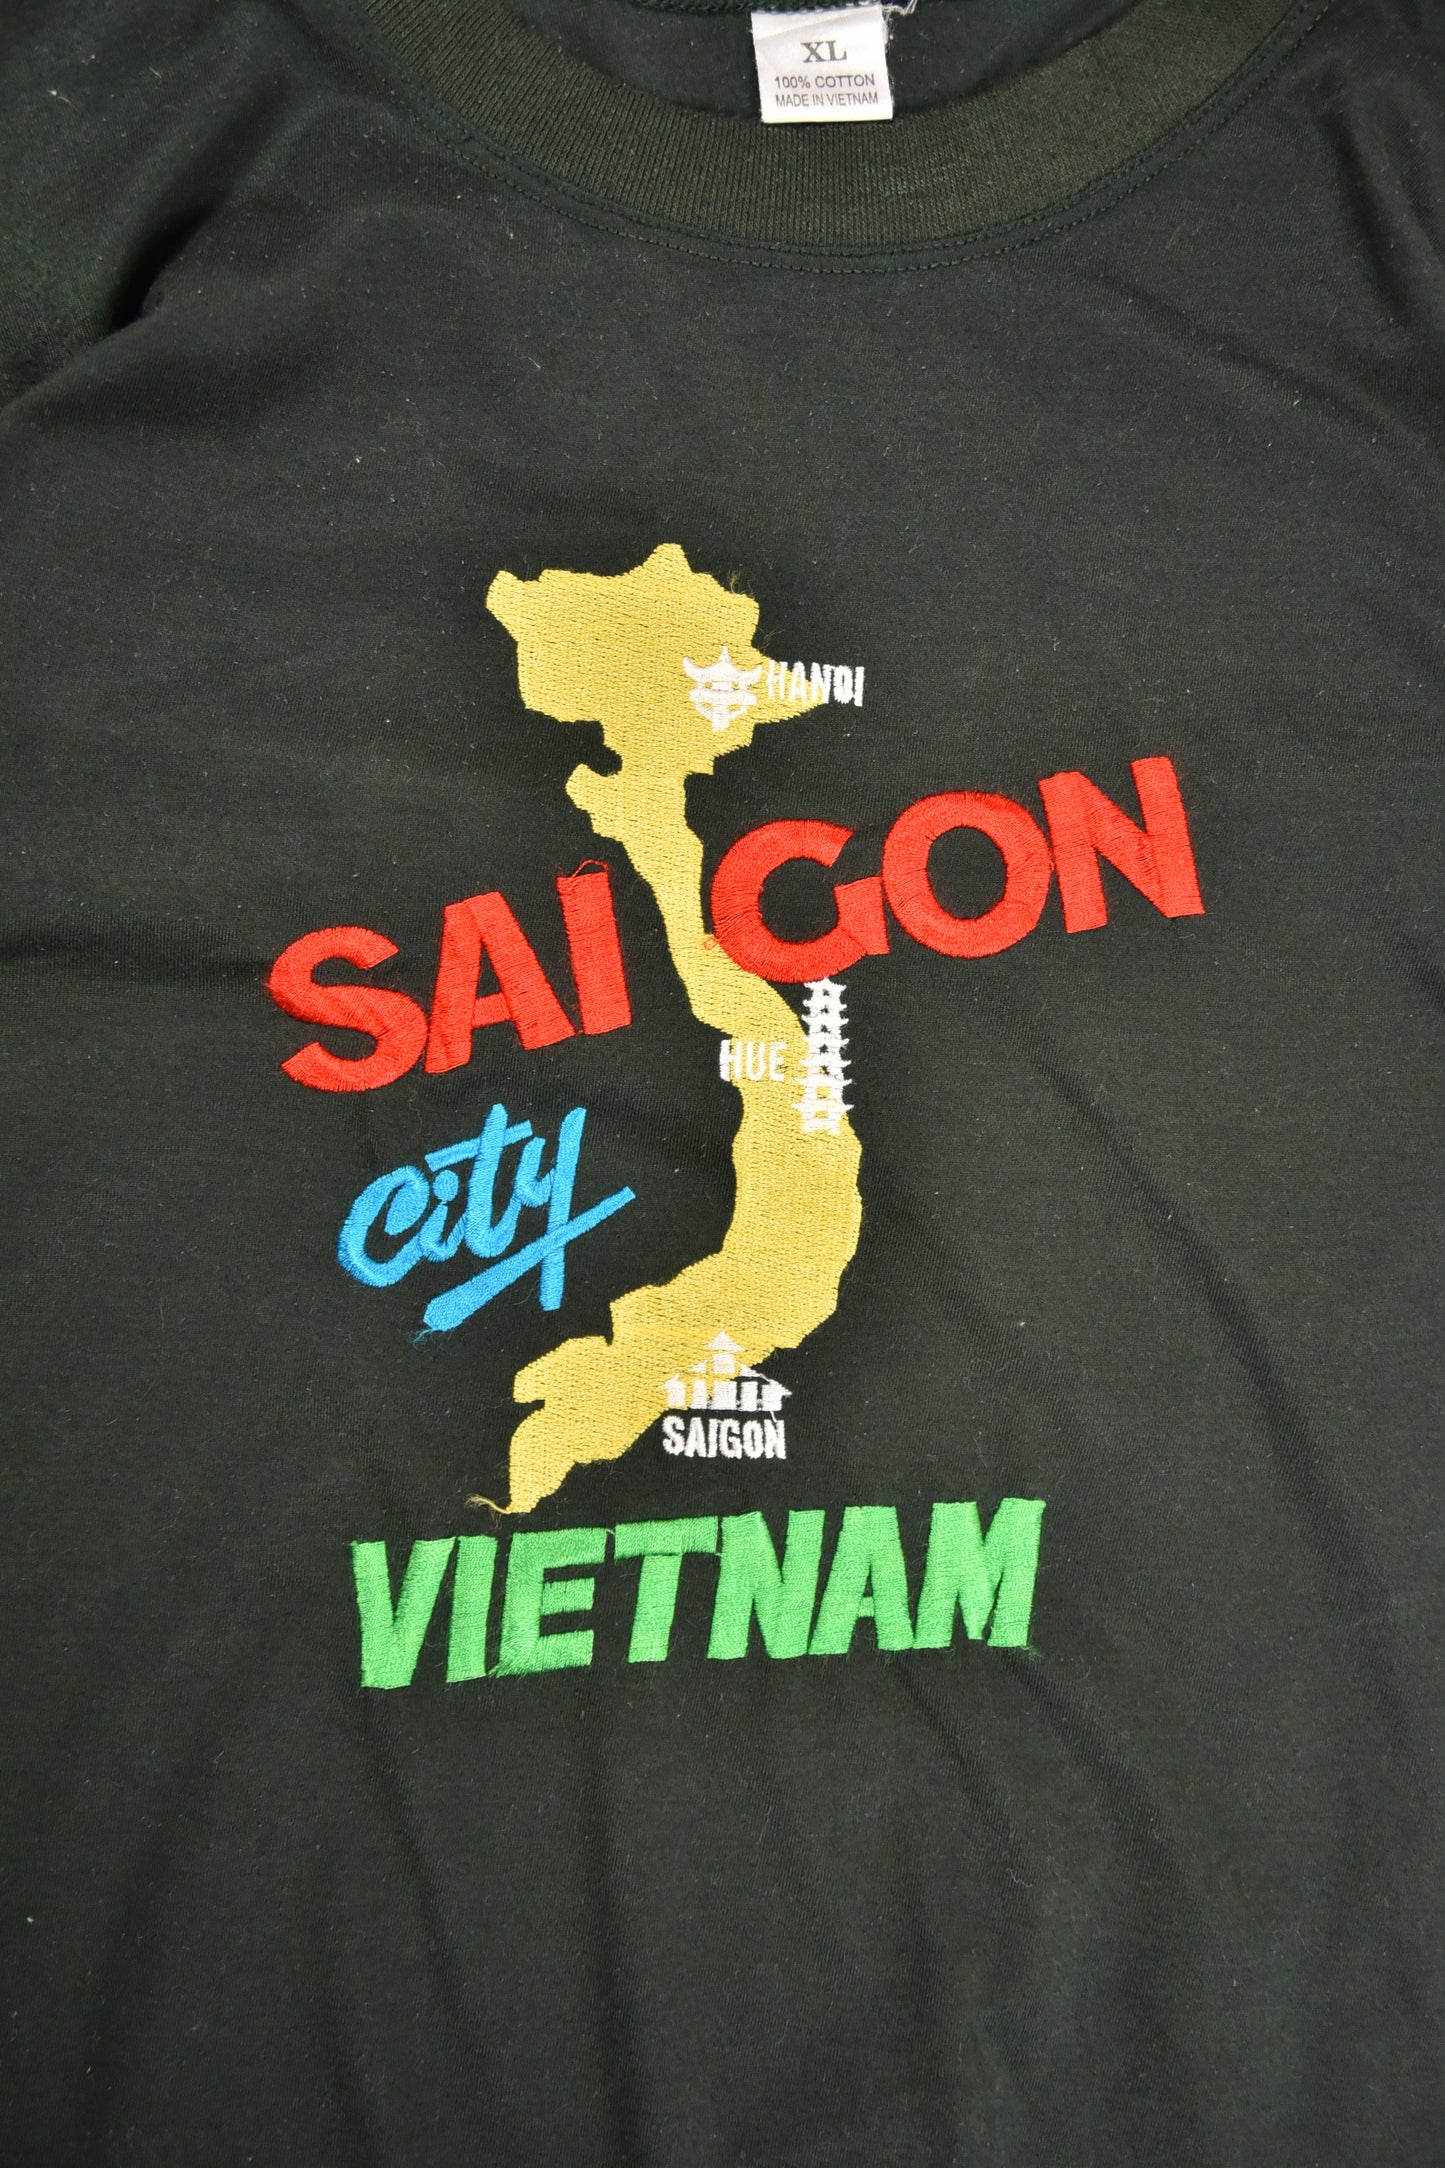 Vintage "VIETNAM" T-Shirt / M